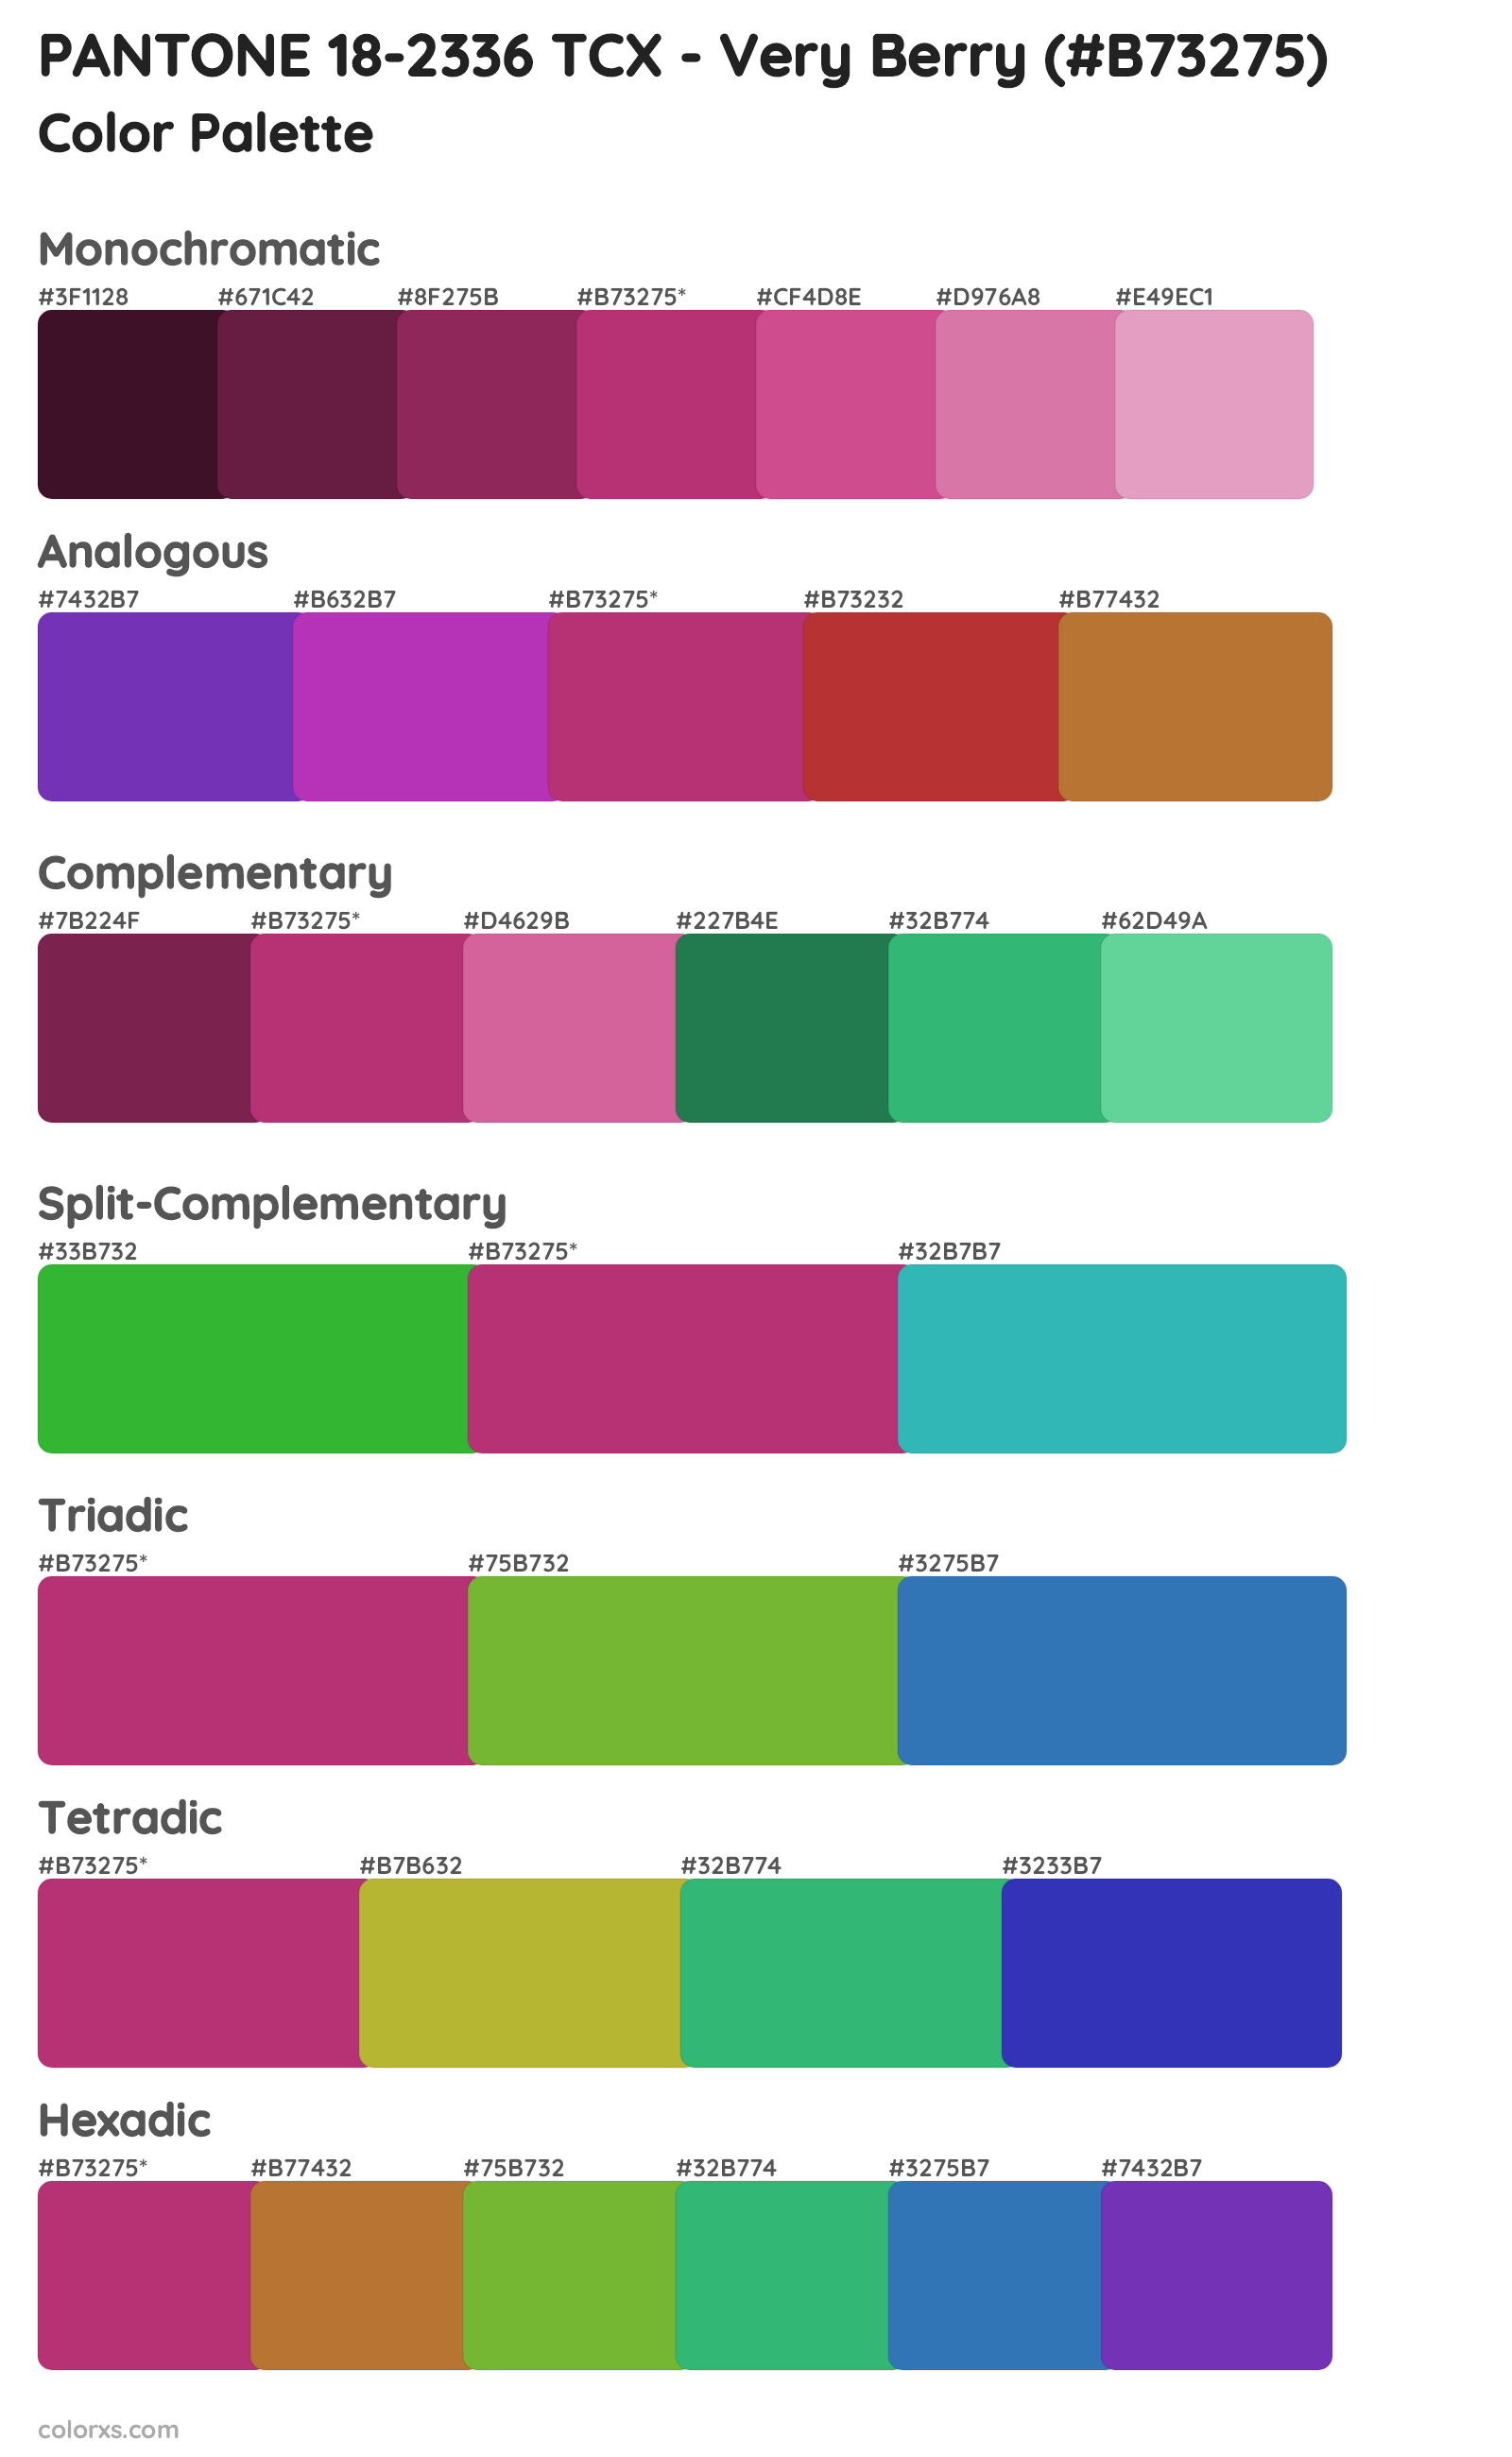 PANTONE 18-2336 TCX - Very Berry Color Scheme Palettes